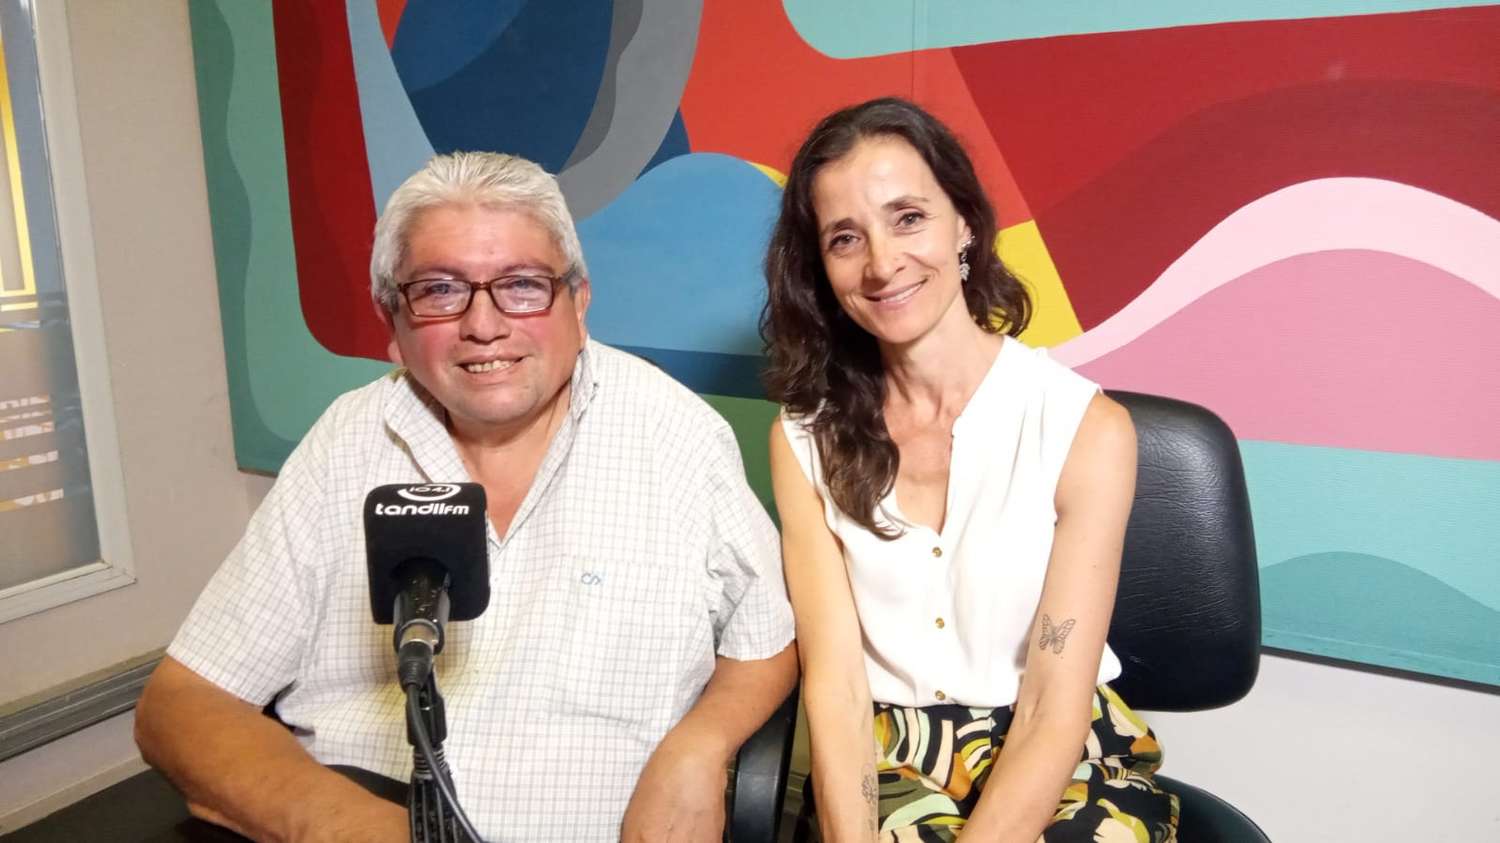 Ángel Molina y Luciana Pareto, desde la radio de El Eco, invitaron al encuentro para compartir vivencias de familias que han tenido diagnósticos de Enfermedades Poco Frecuentes (EPOF).